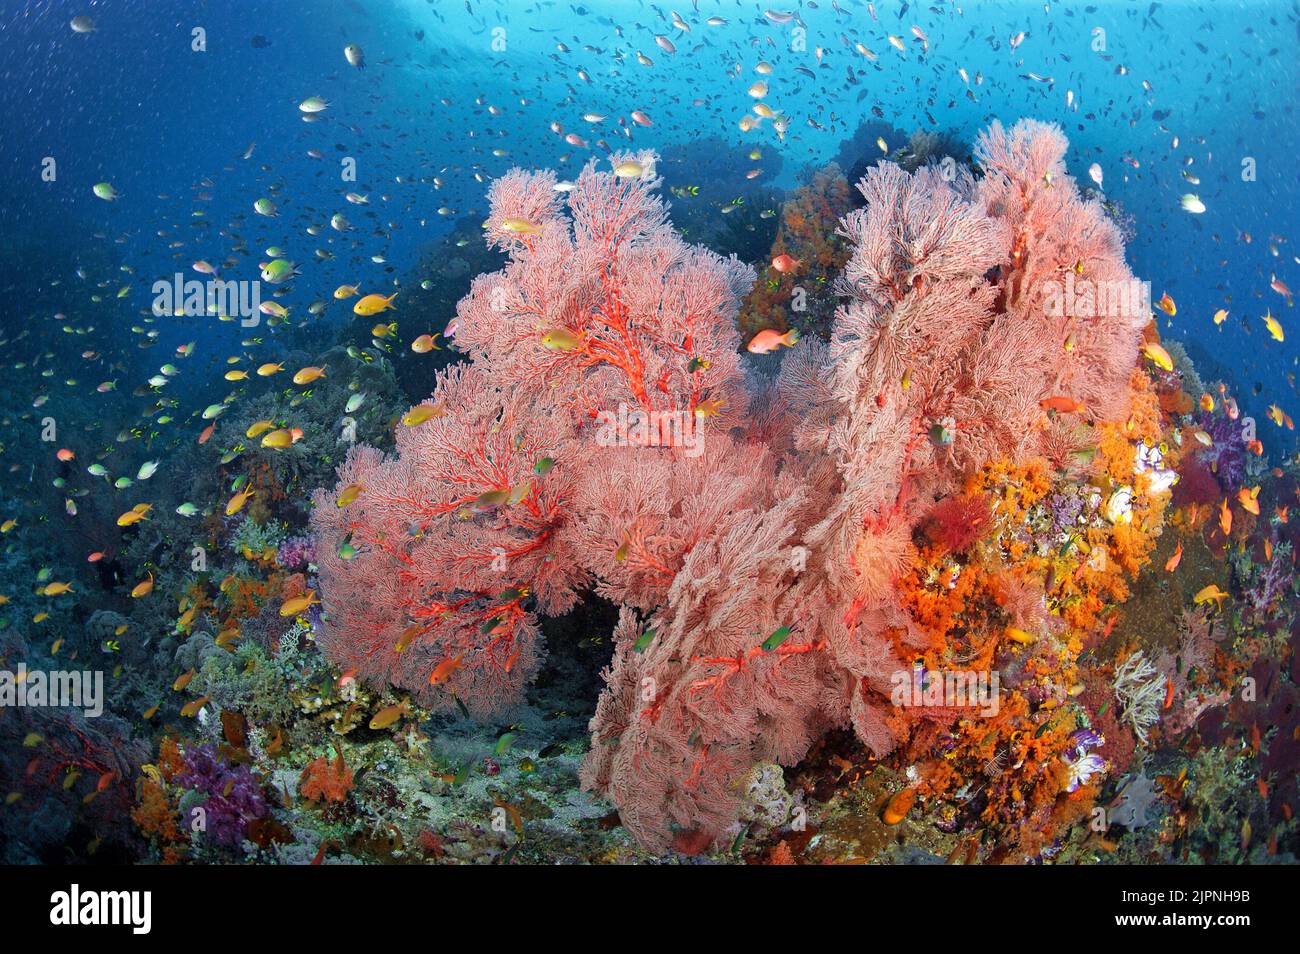 Bijou fée basset ou litRetail anthias (Pseudanthias squamipinnis) naviguant autour d'un immense éventail de corail (Melithaea ochracea), Komodo, Indonésie Banque D'Images